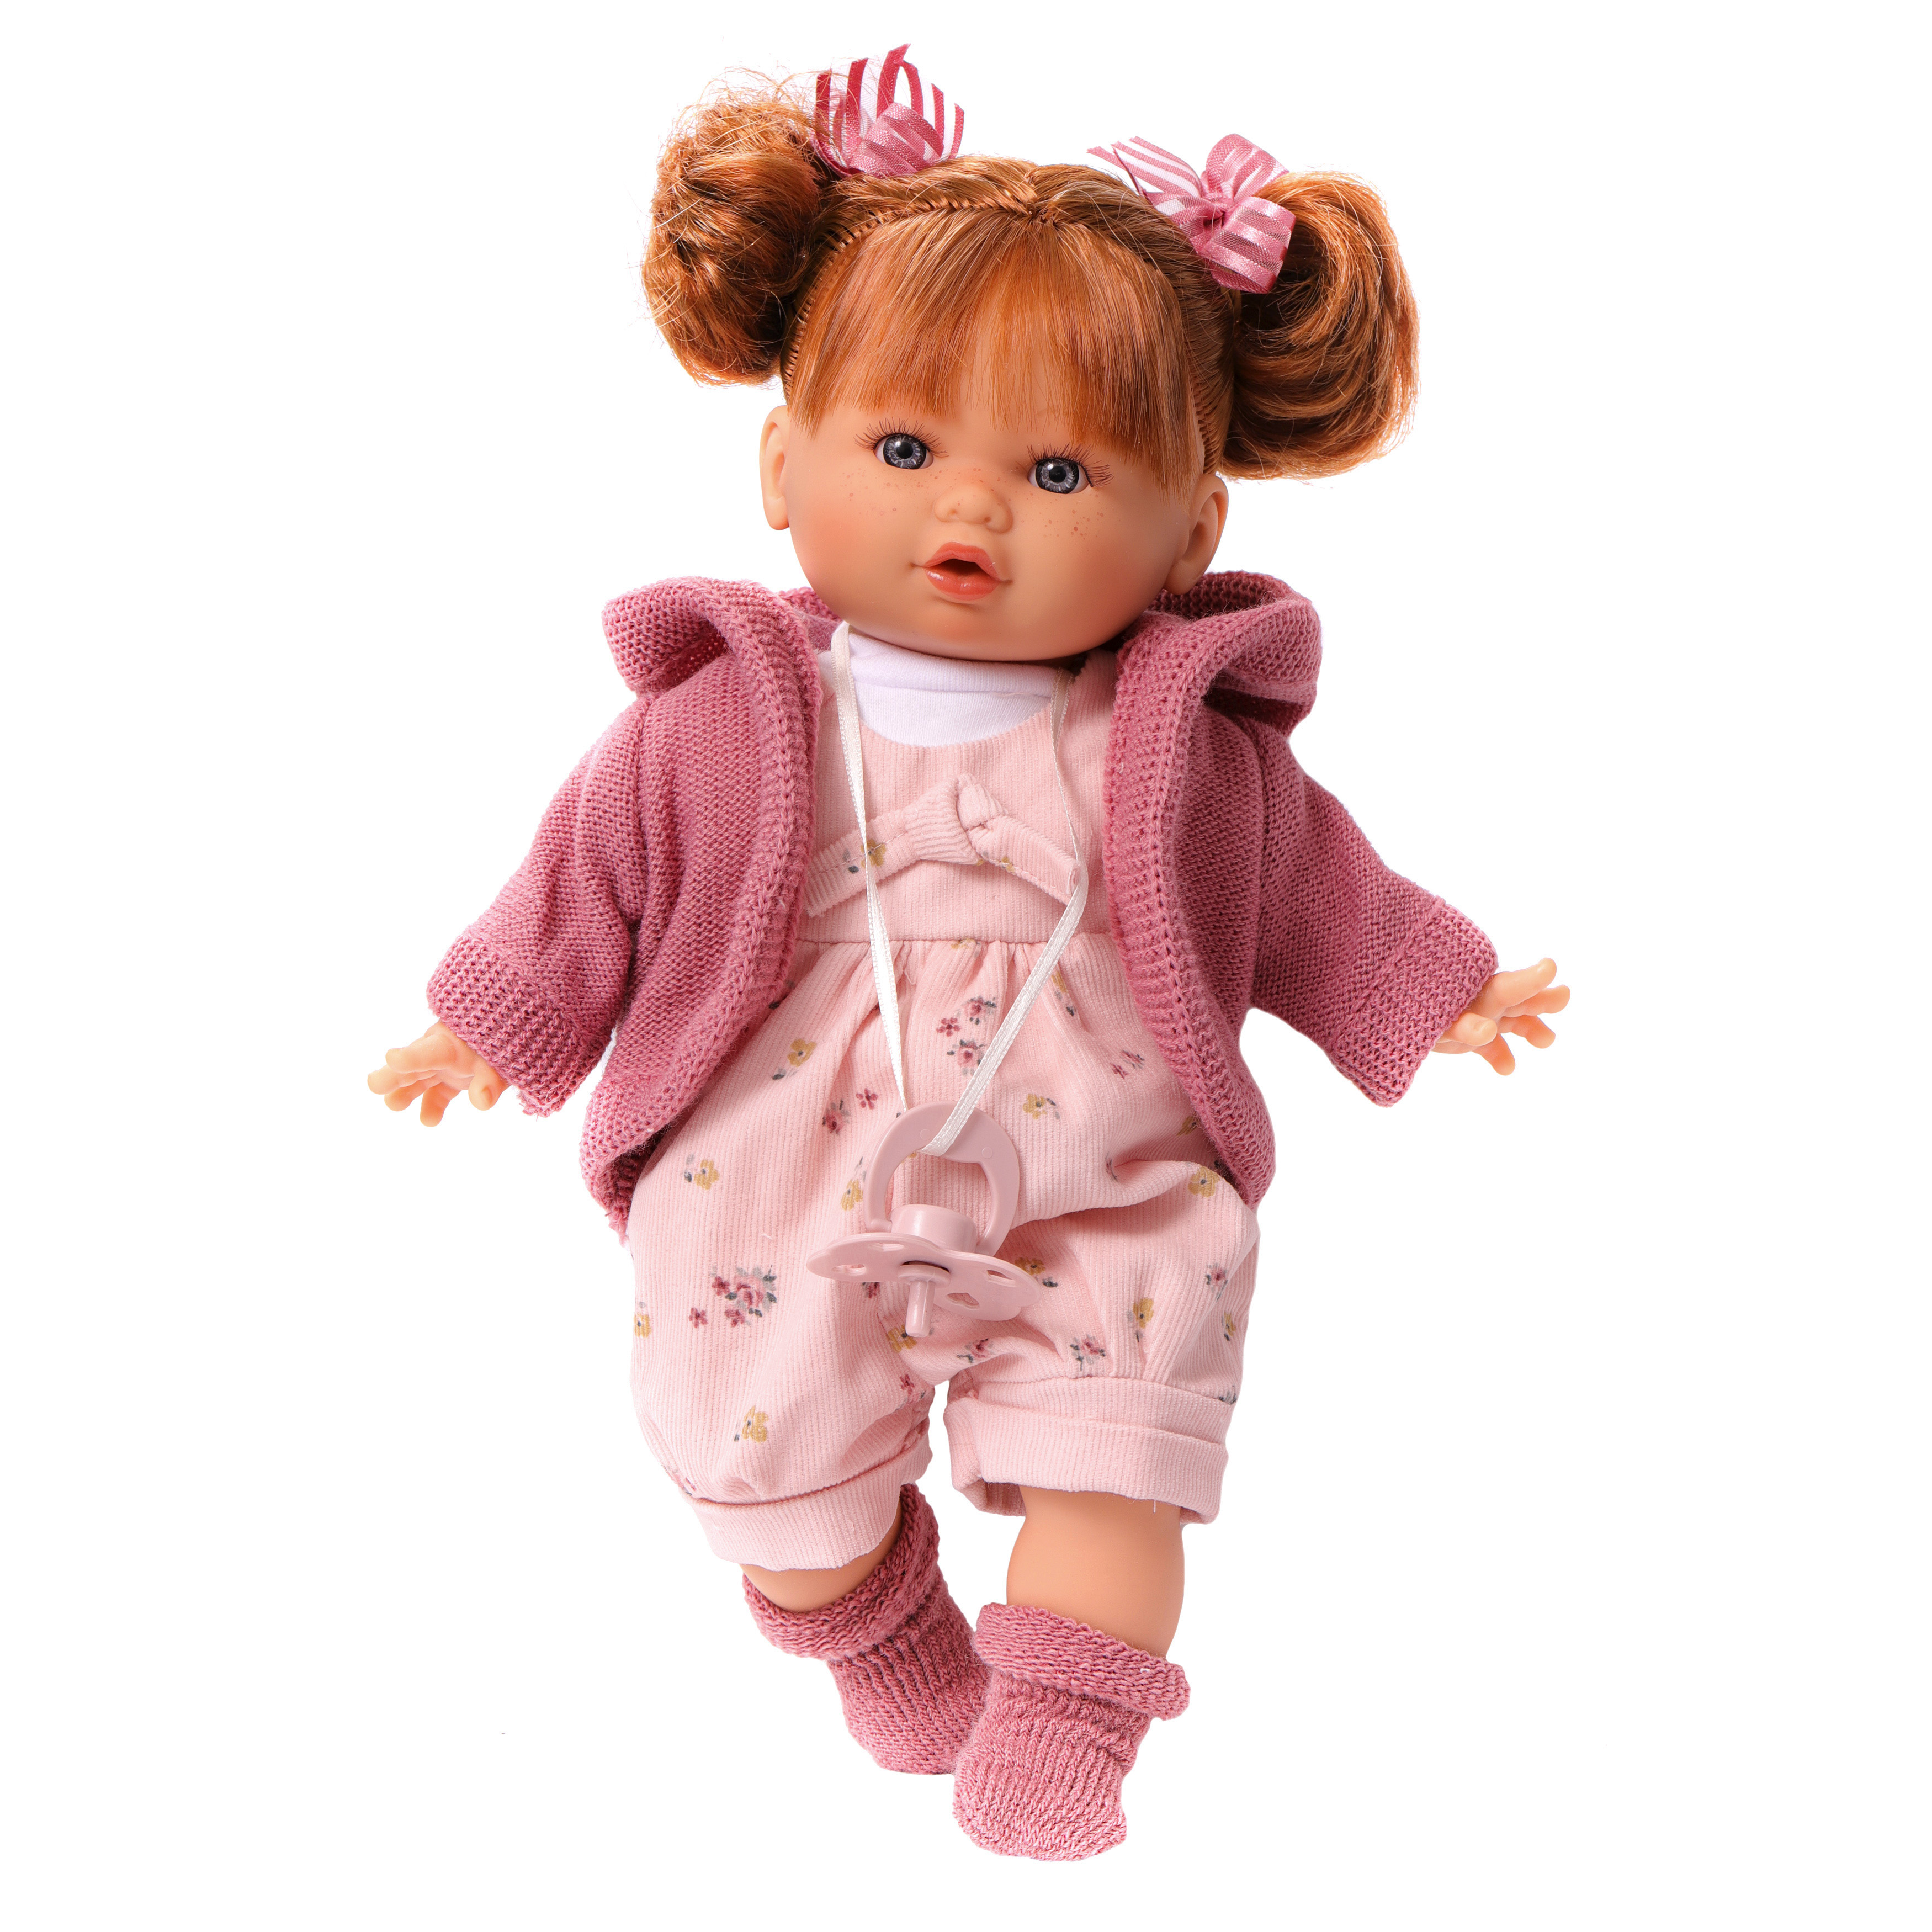 Кукла говорящая Antonio Juan Оливия в розовом, 30 см, плачет, мягконабивная 13144 кукла девочка испанская antonio juan ирис в серо розовом 38 см виниловая 23308